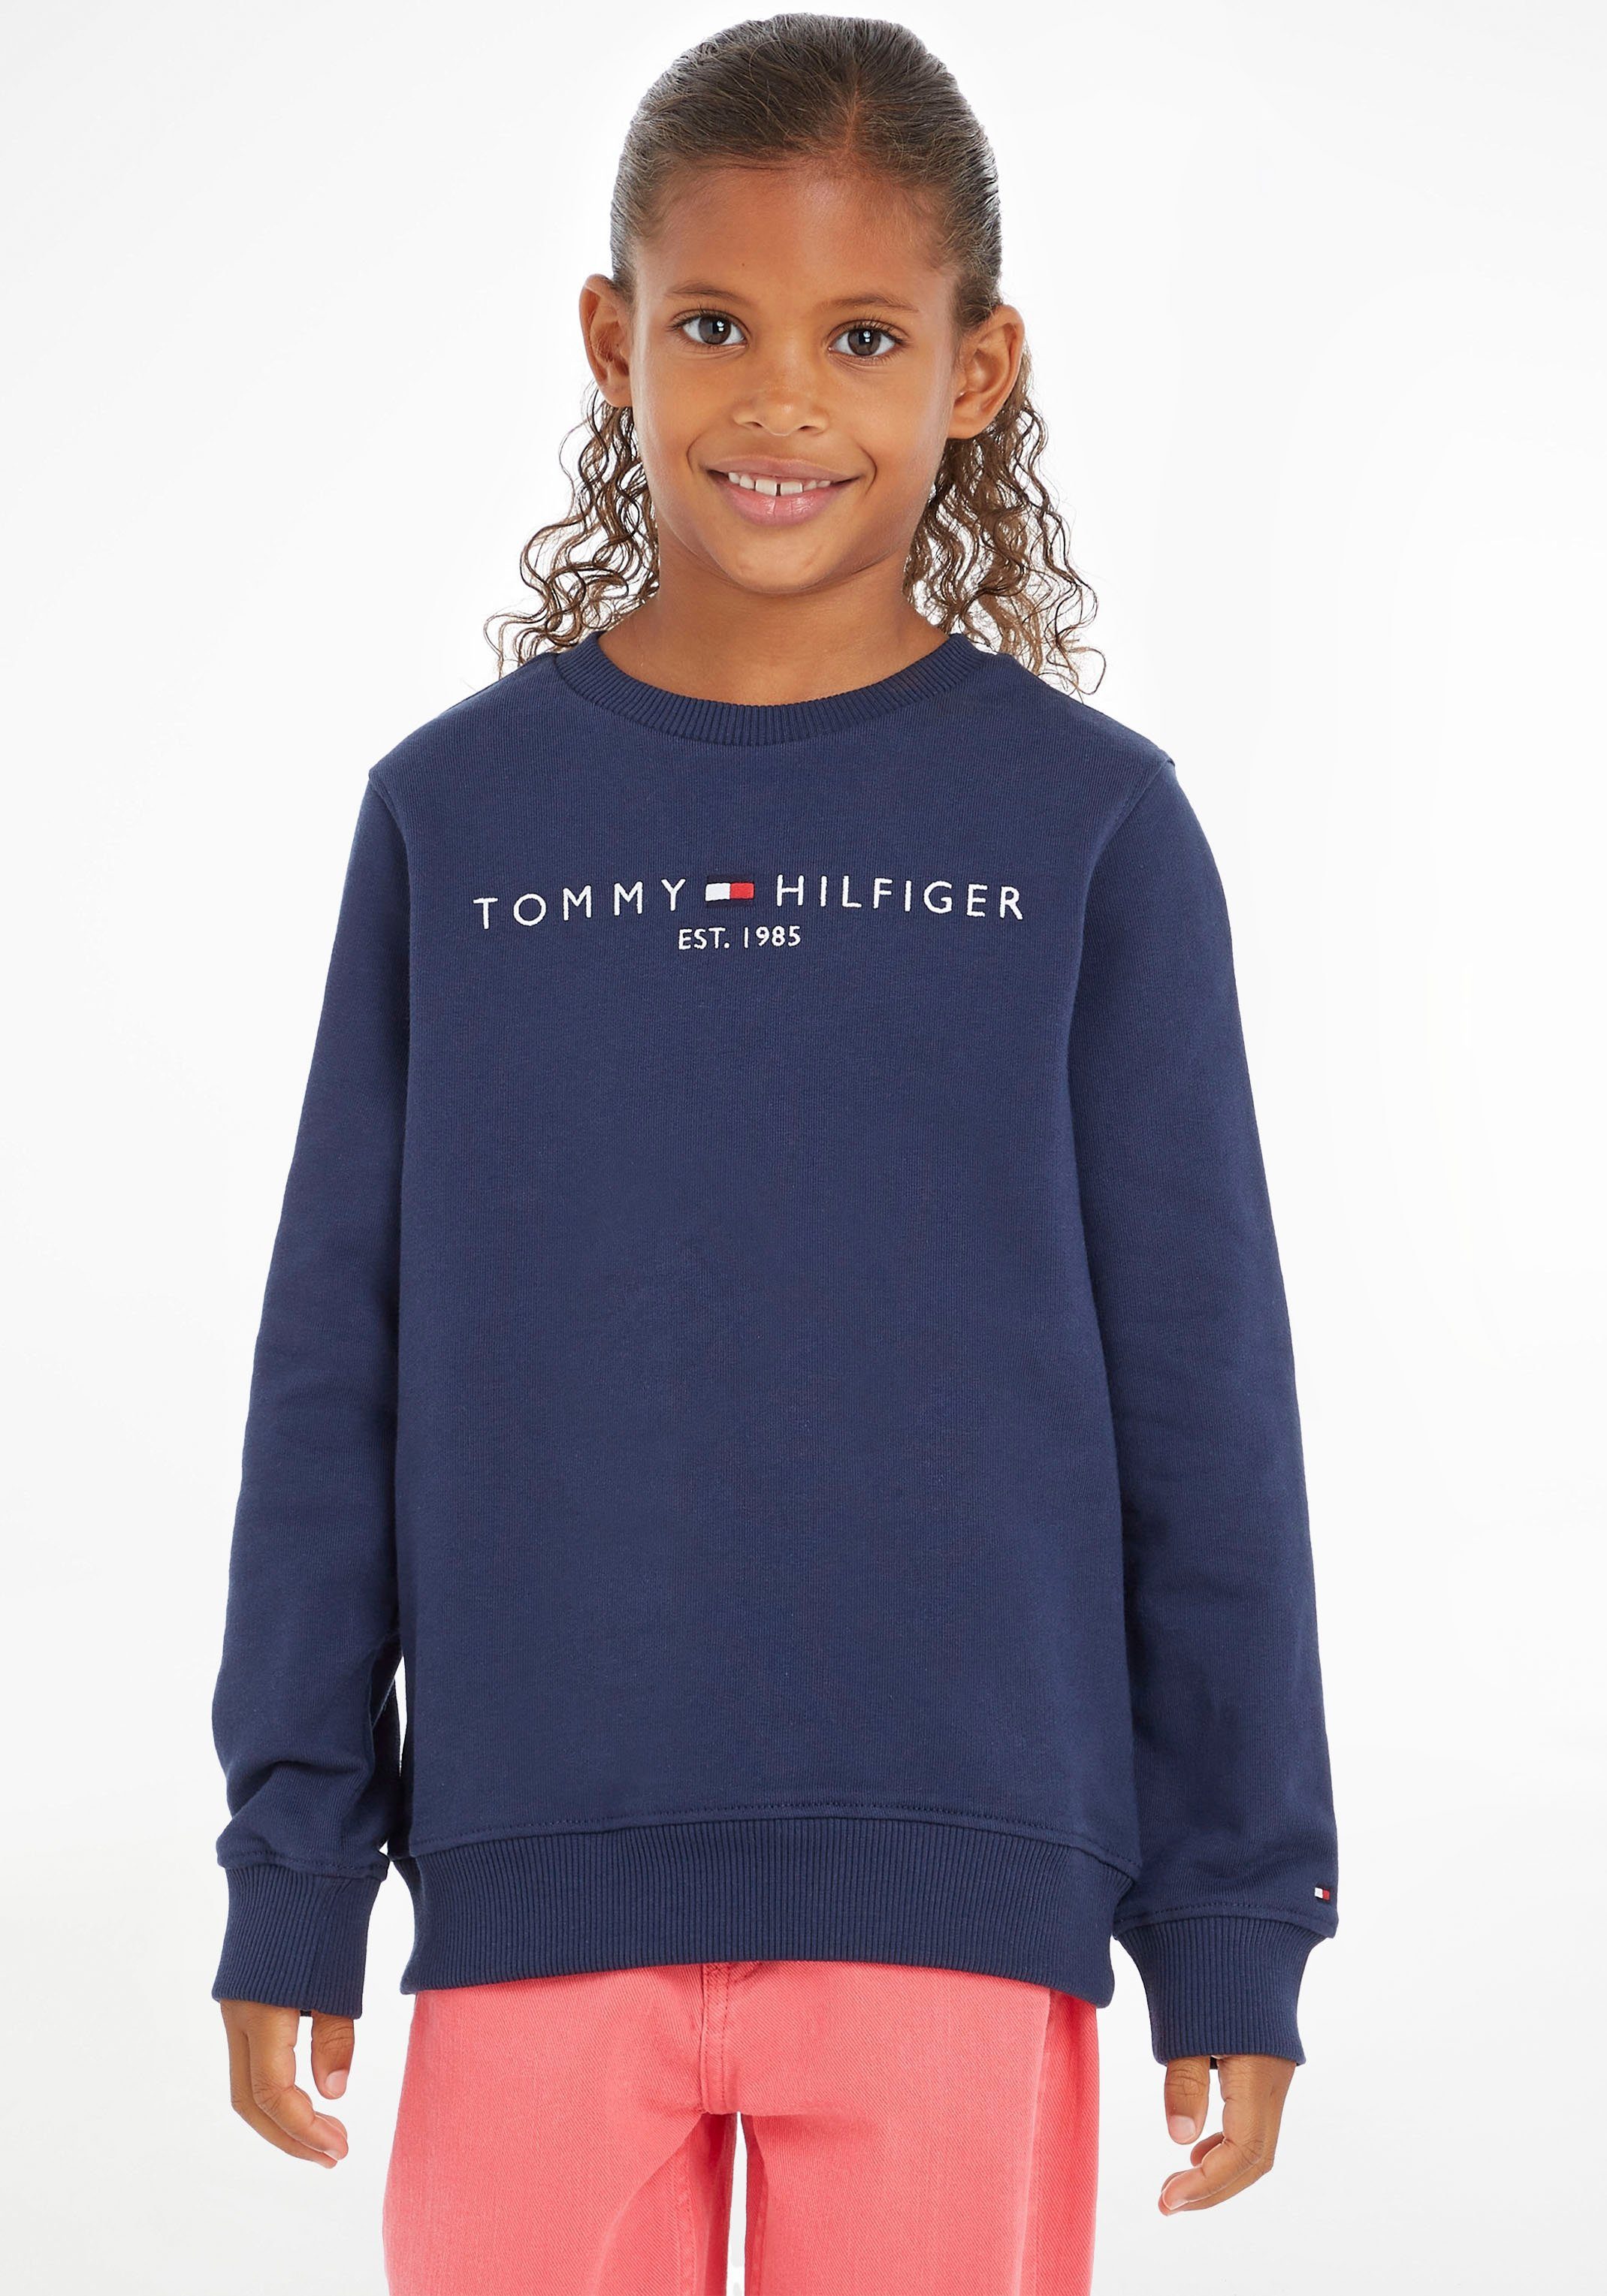 Tommy Hilfiger Sweatshirt ESSENTIAL SWEATSHIRT Kinder Kids Junior MiniMe,für  Jungen und Mädchen, Mit großem Logodruck und kleiner Stickerei auf der Brust